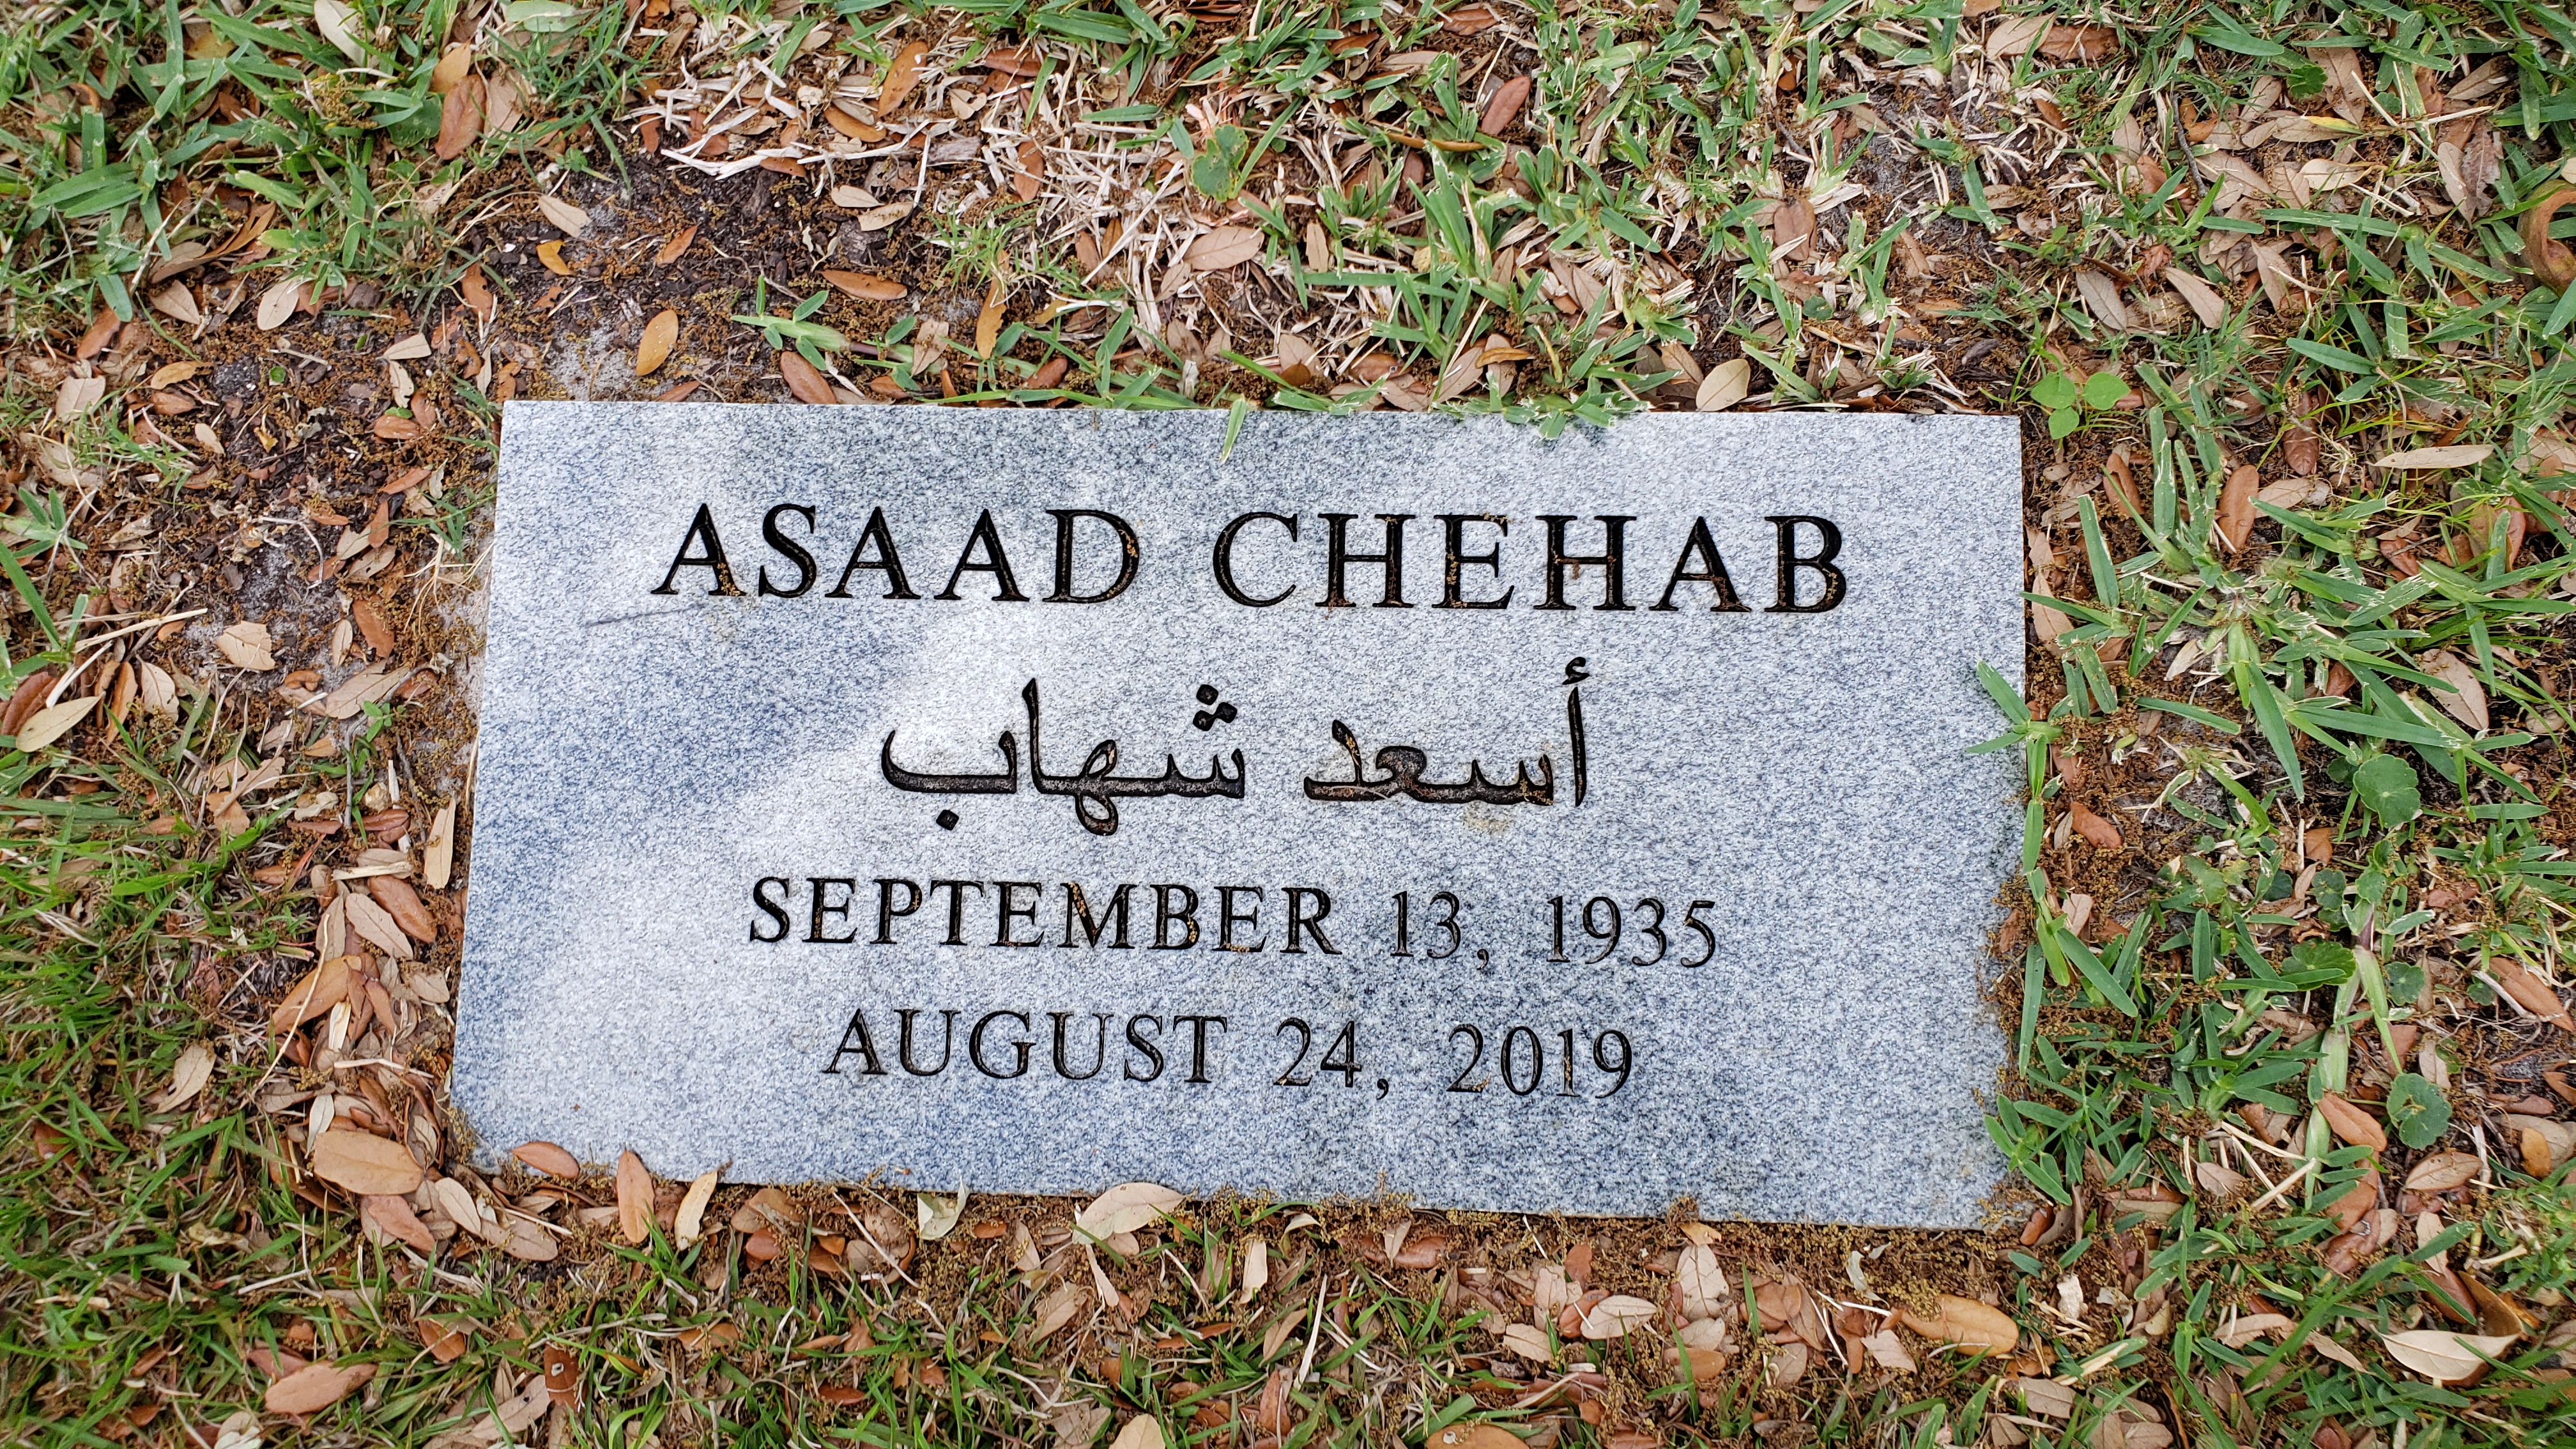 Asaad Chehab